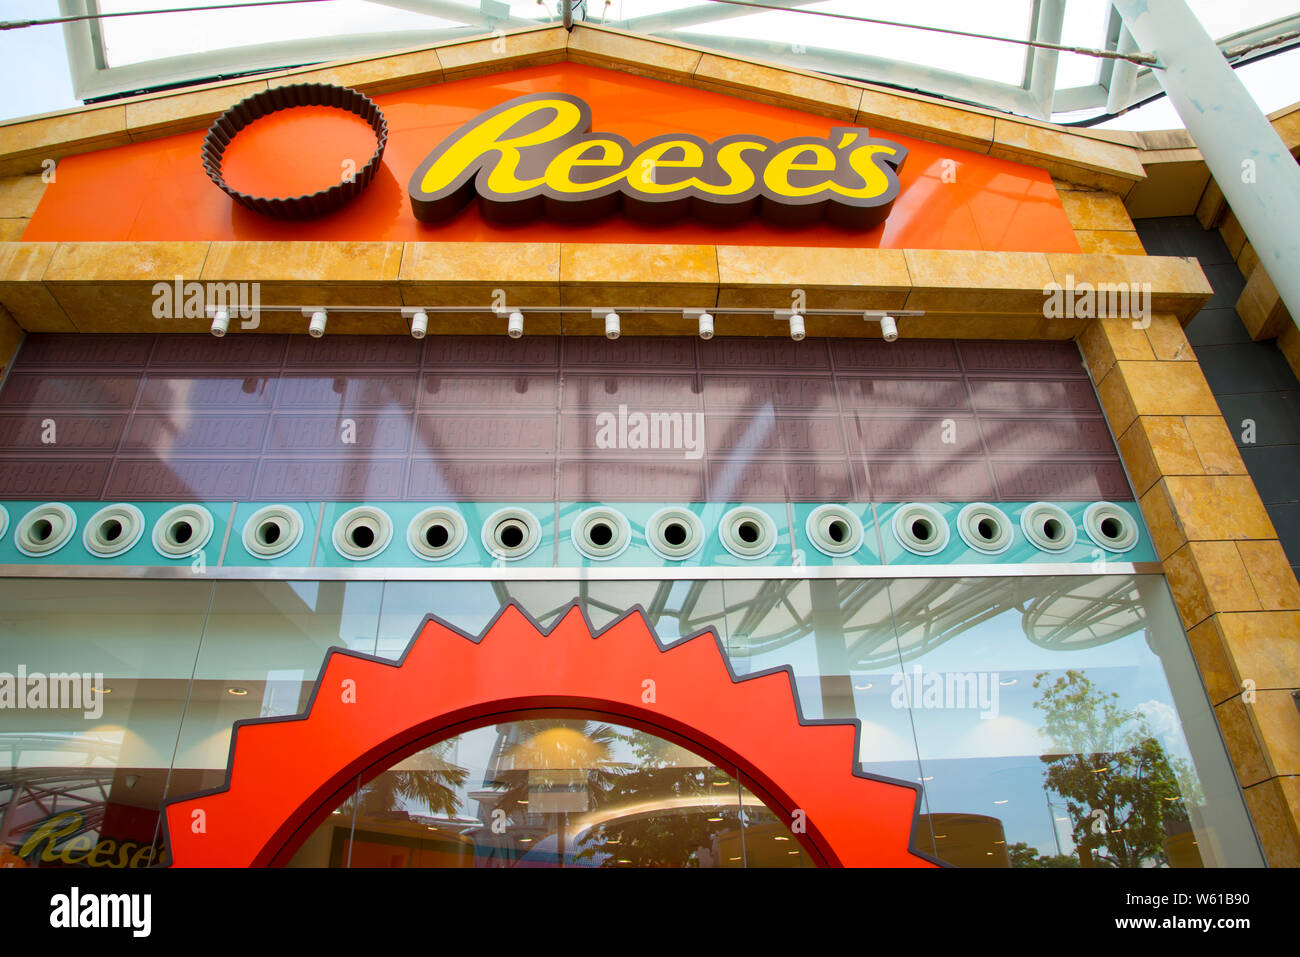 Hershey's Chocolate World located in Resorts World Sentosa Stock Photo